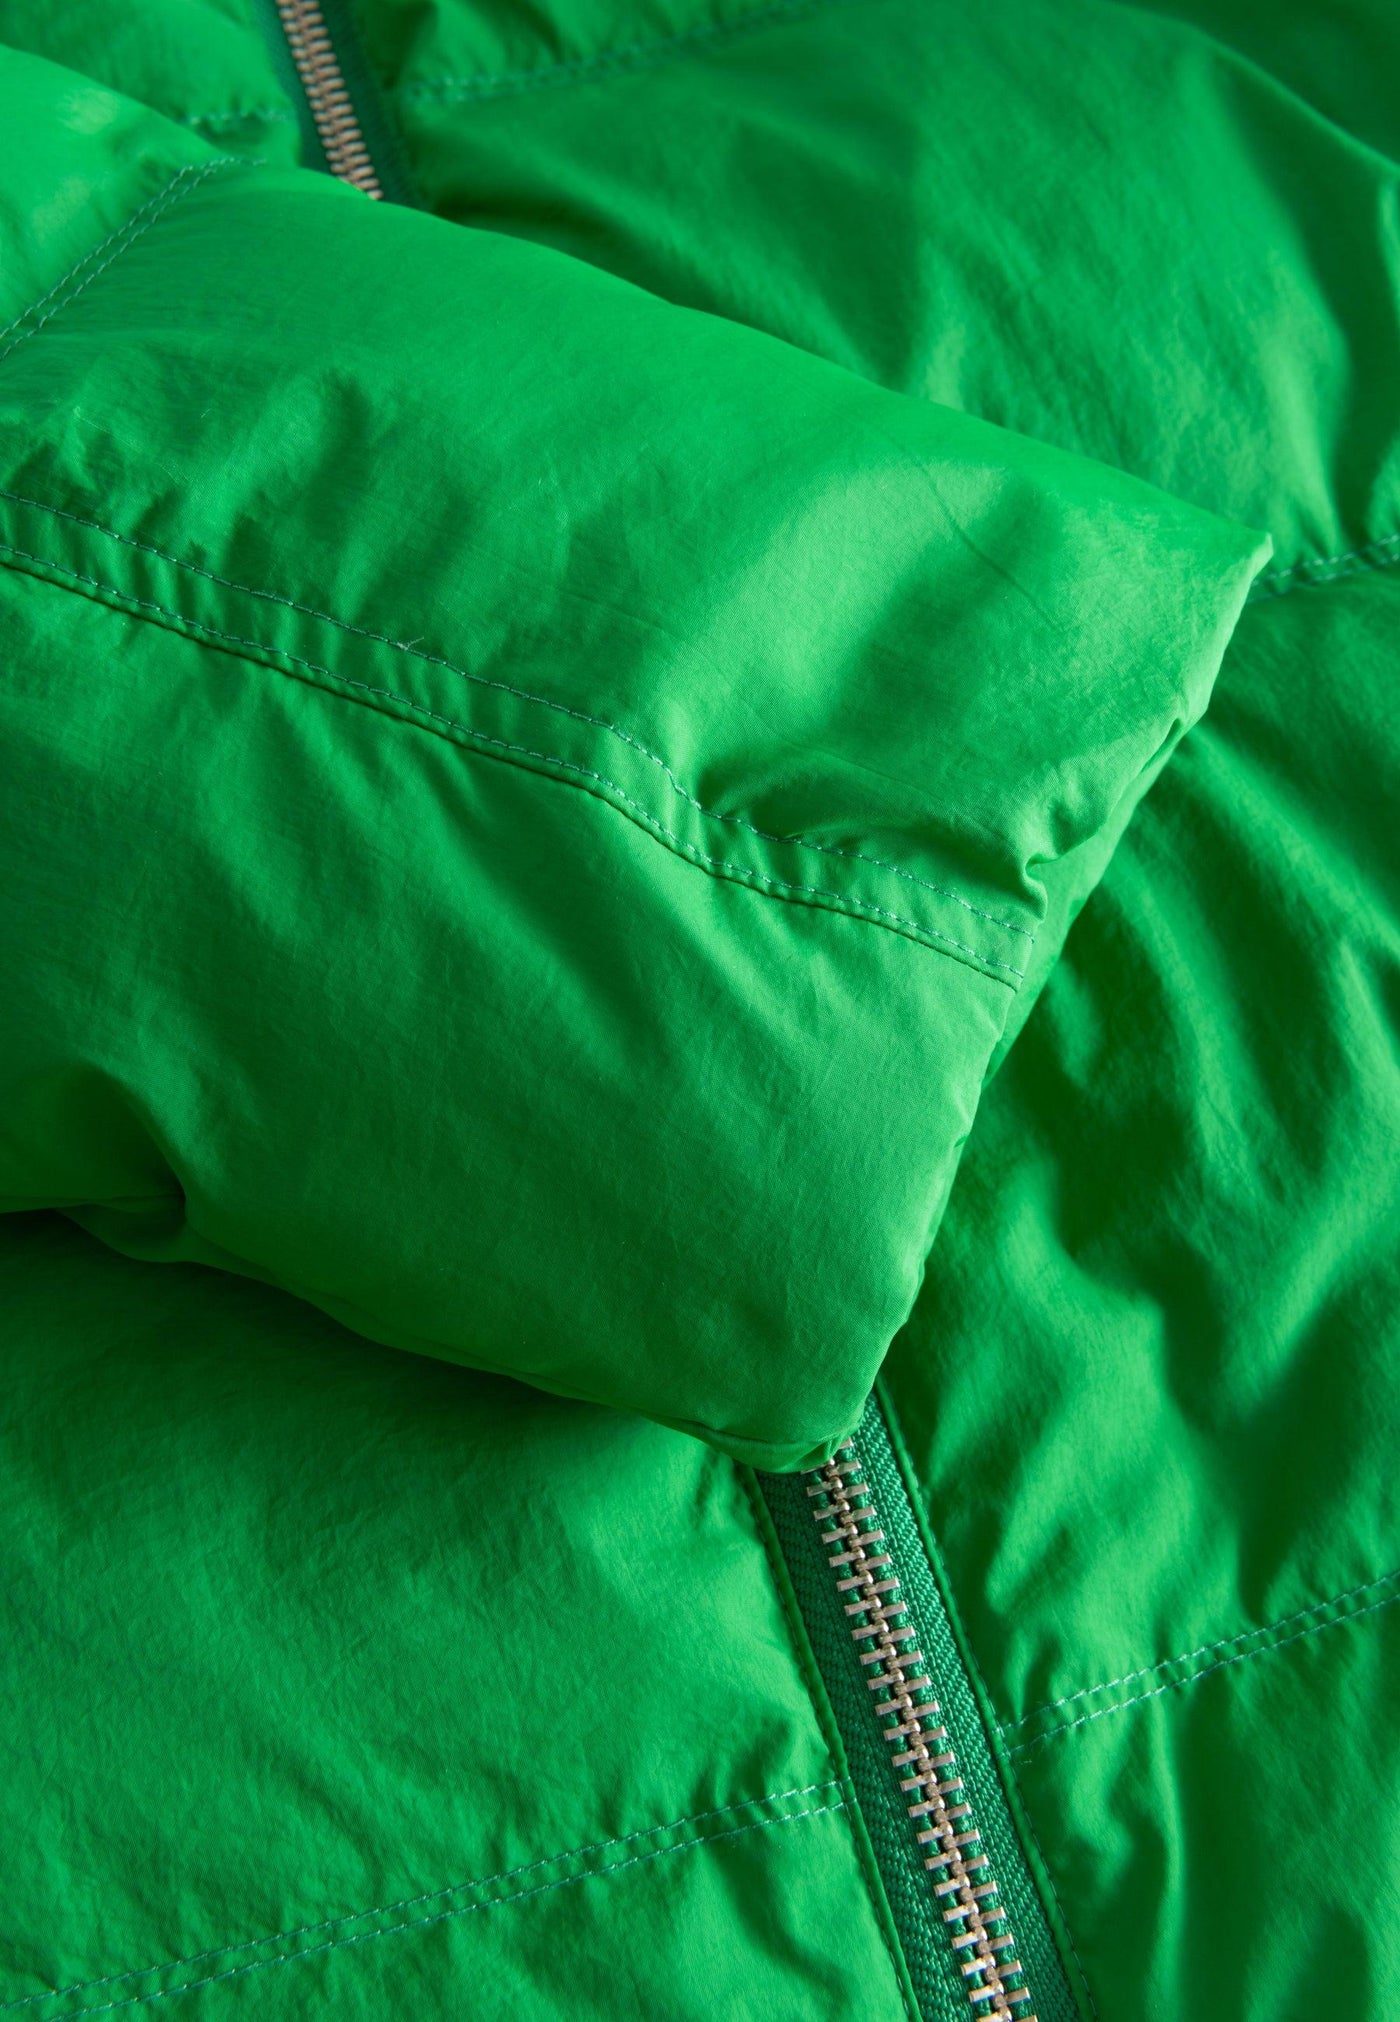 LÄST Short Hooded Puffer Jacket Green Jackets Green